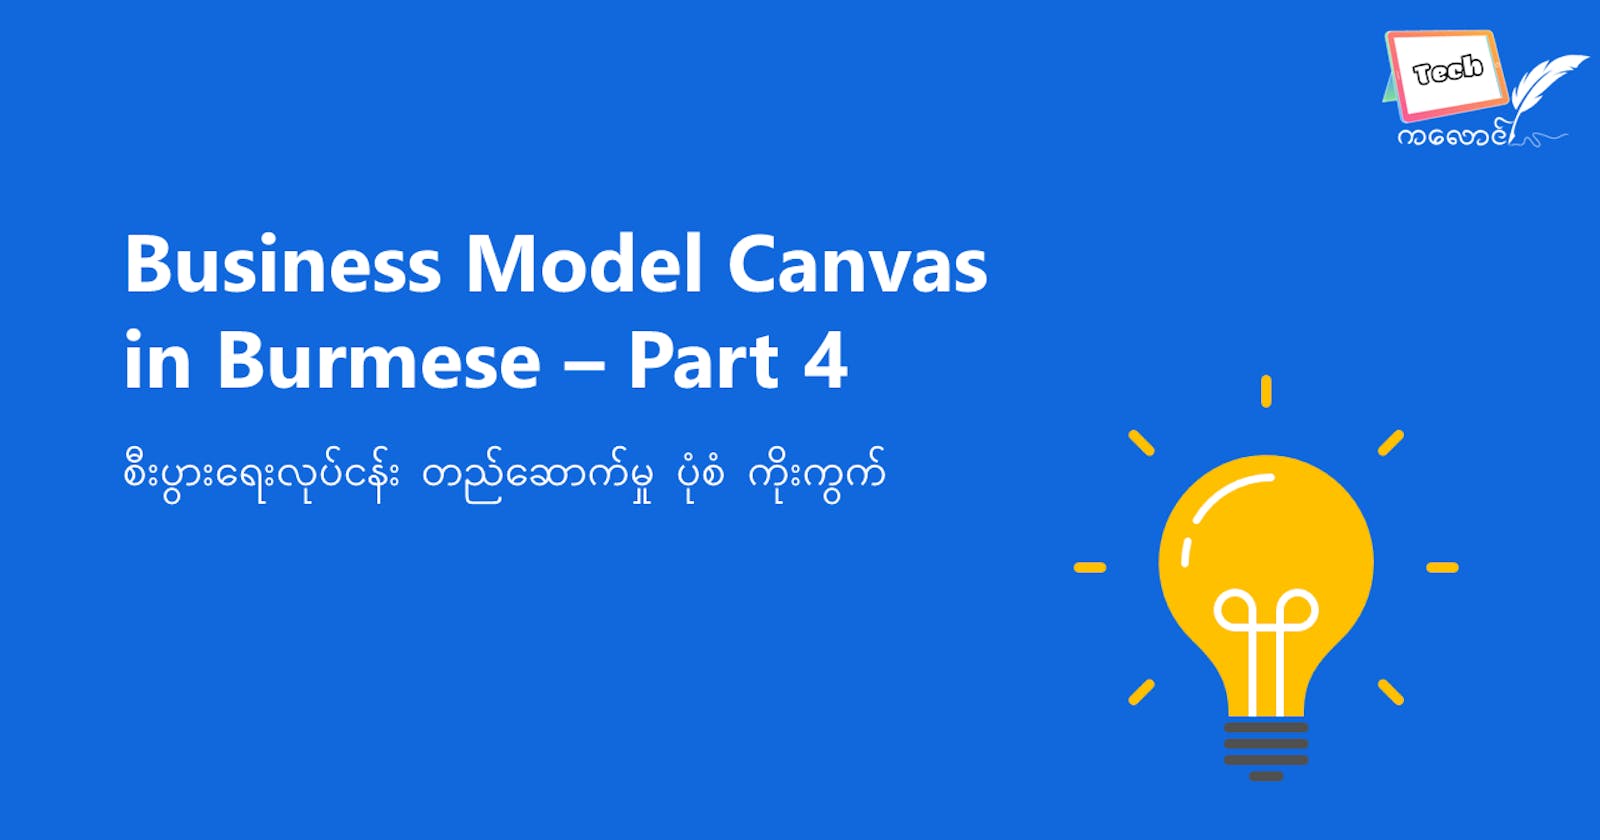 Business Model Canvas — Part 4